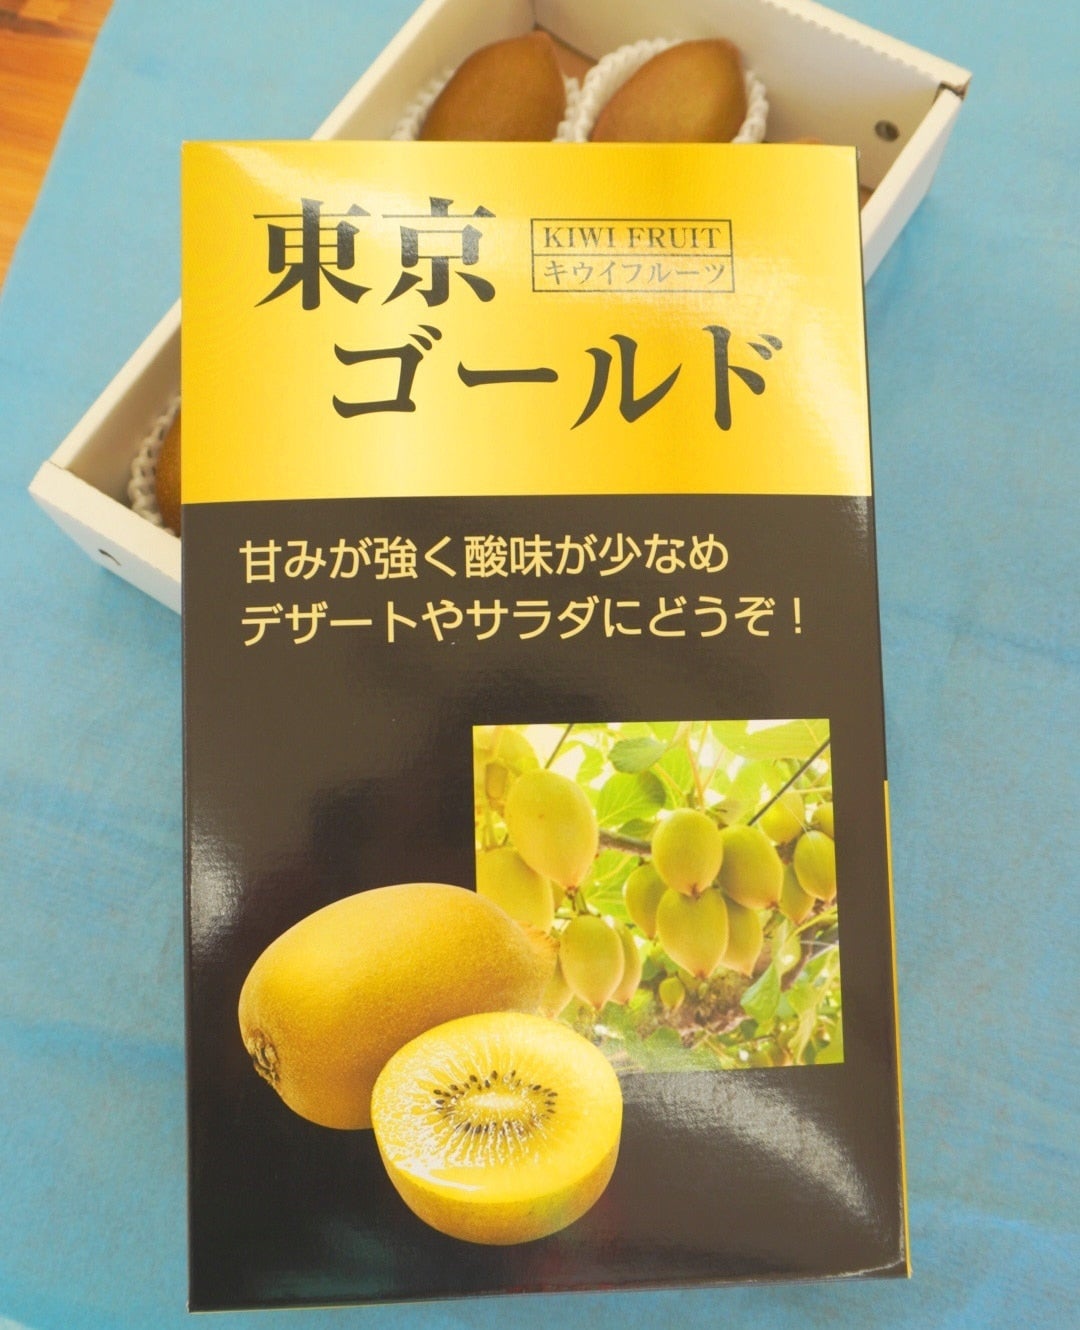 ゴールドキウイフルーツ11玉正規品